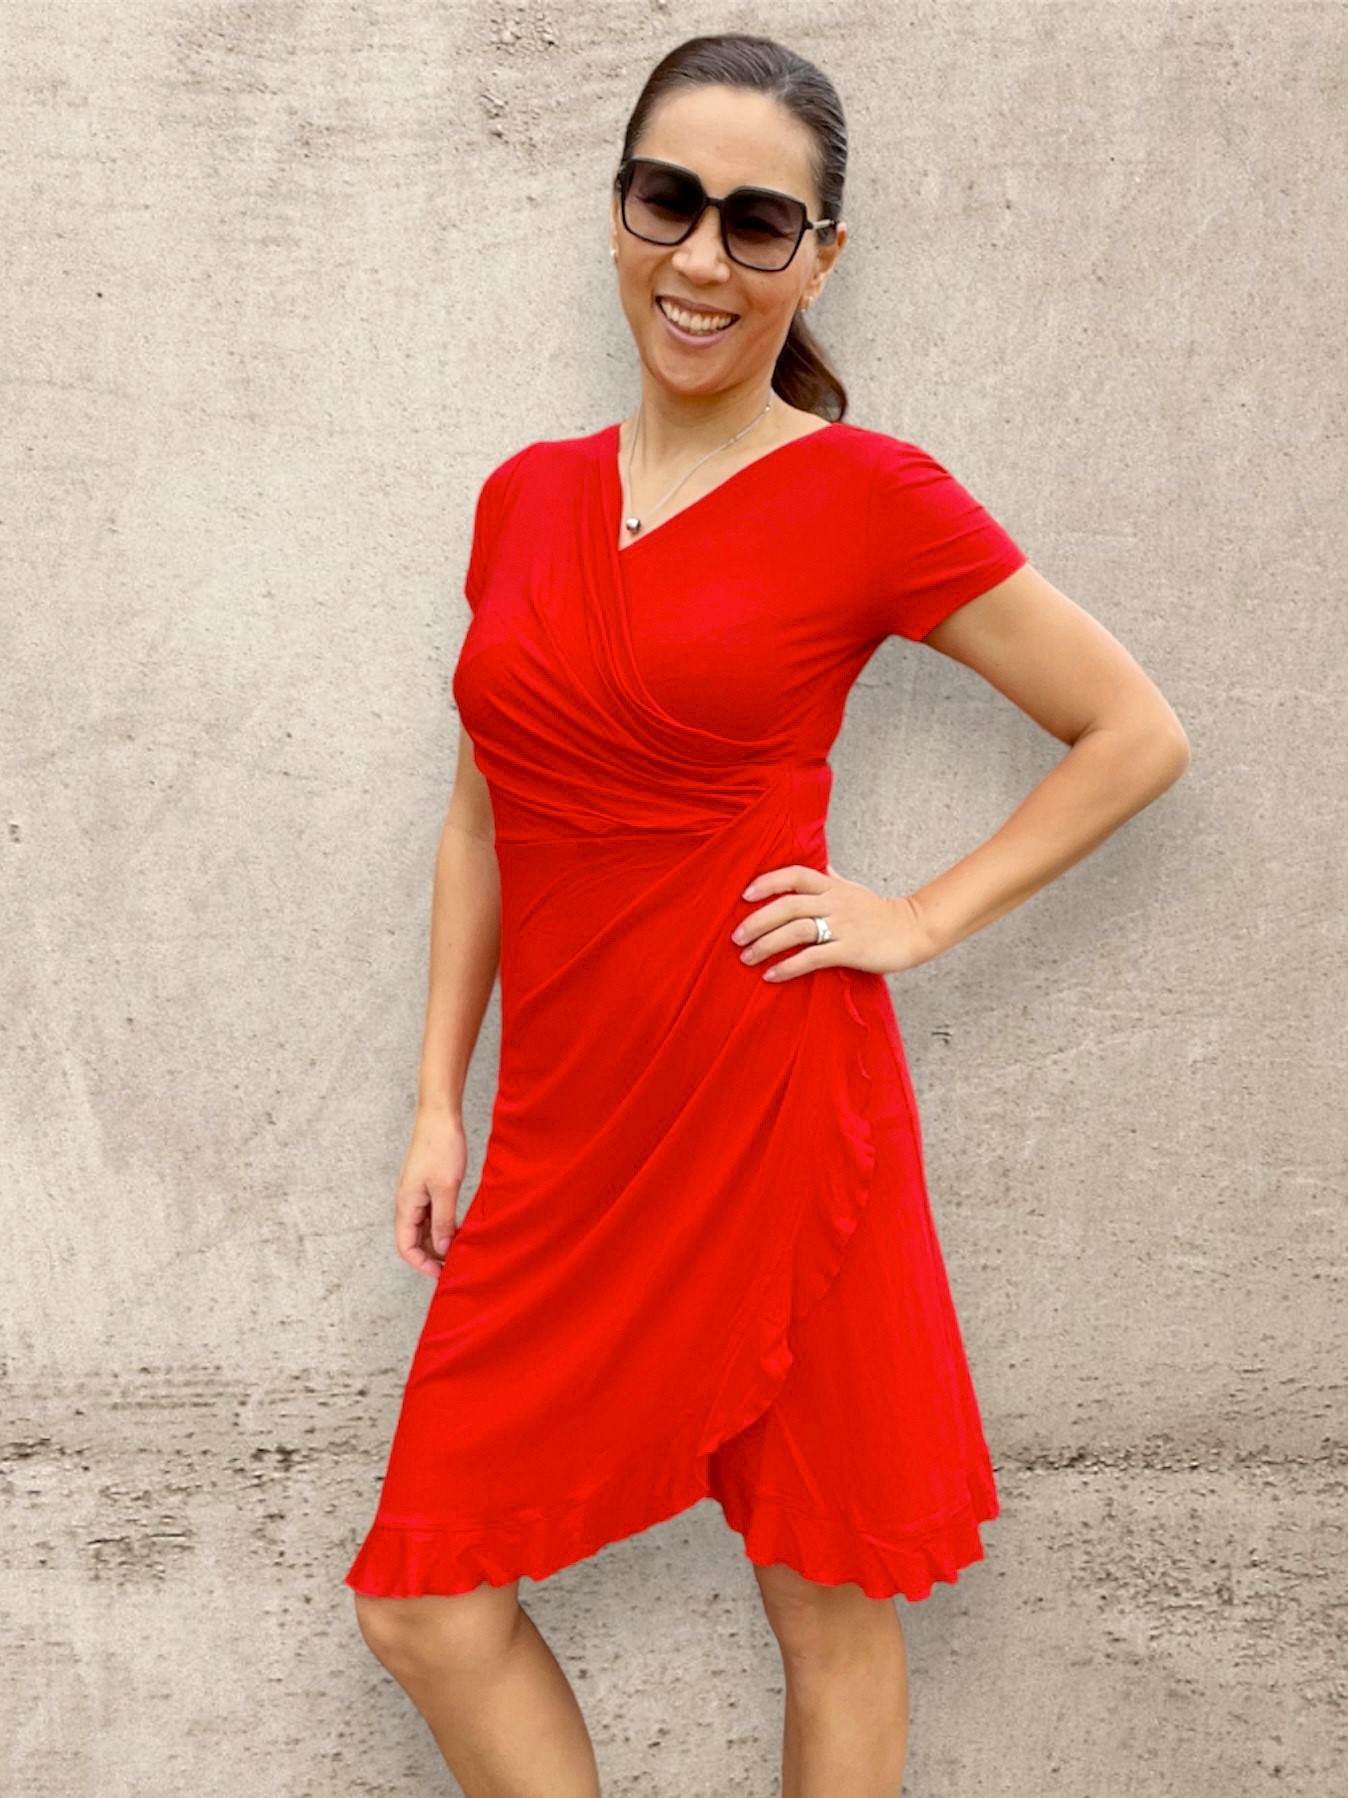 Omlottklänning I Röd klänning I Trikåklänning röd I Jerseydress I Röd klänning med stretch I Feminin klänning I Sommarklänning I Sköna klänningar